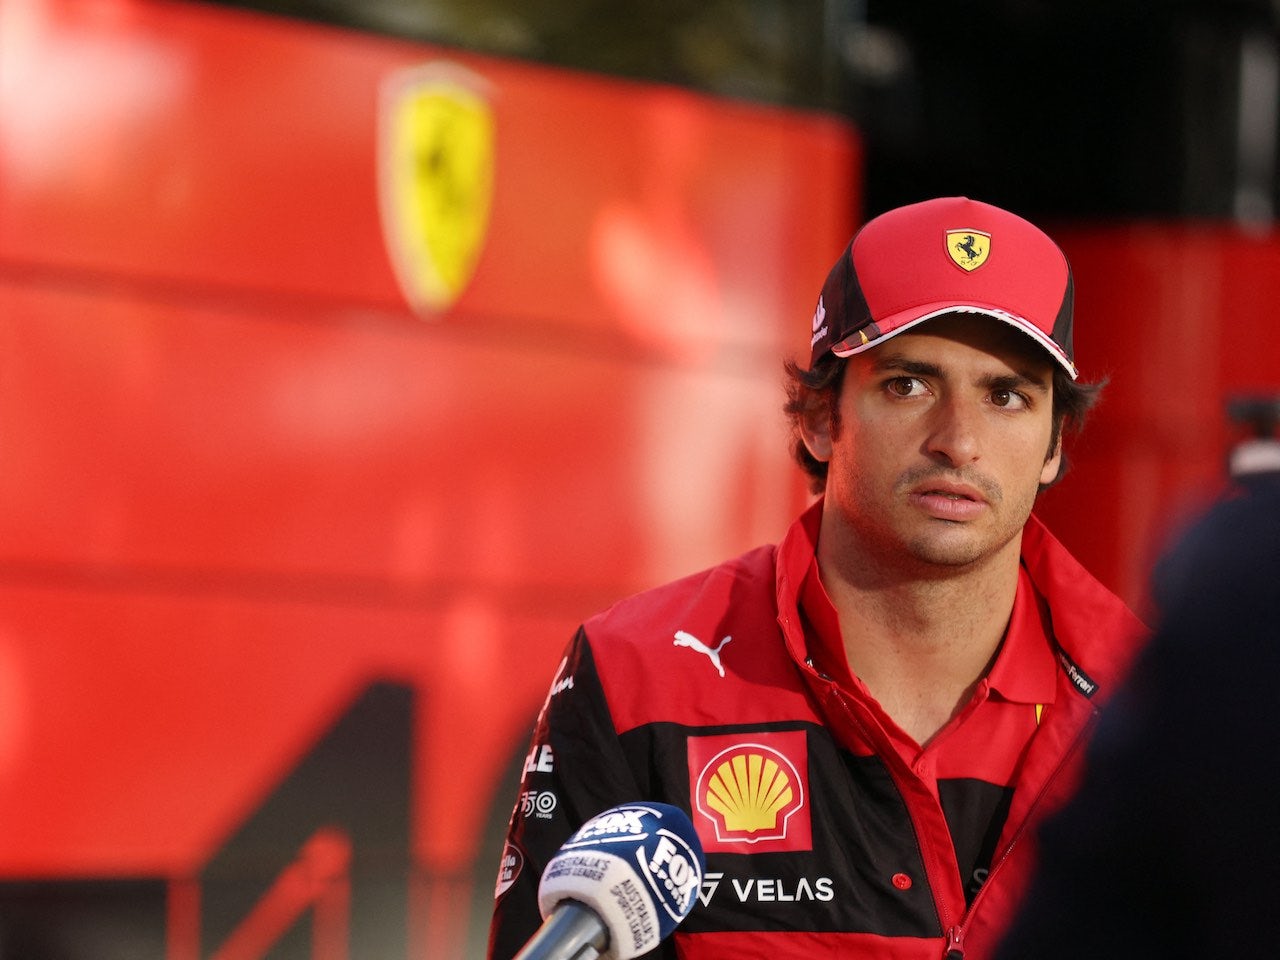 New Ferrari deal for Sainz 'obvious' - Schumacher